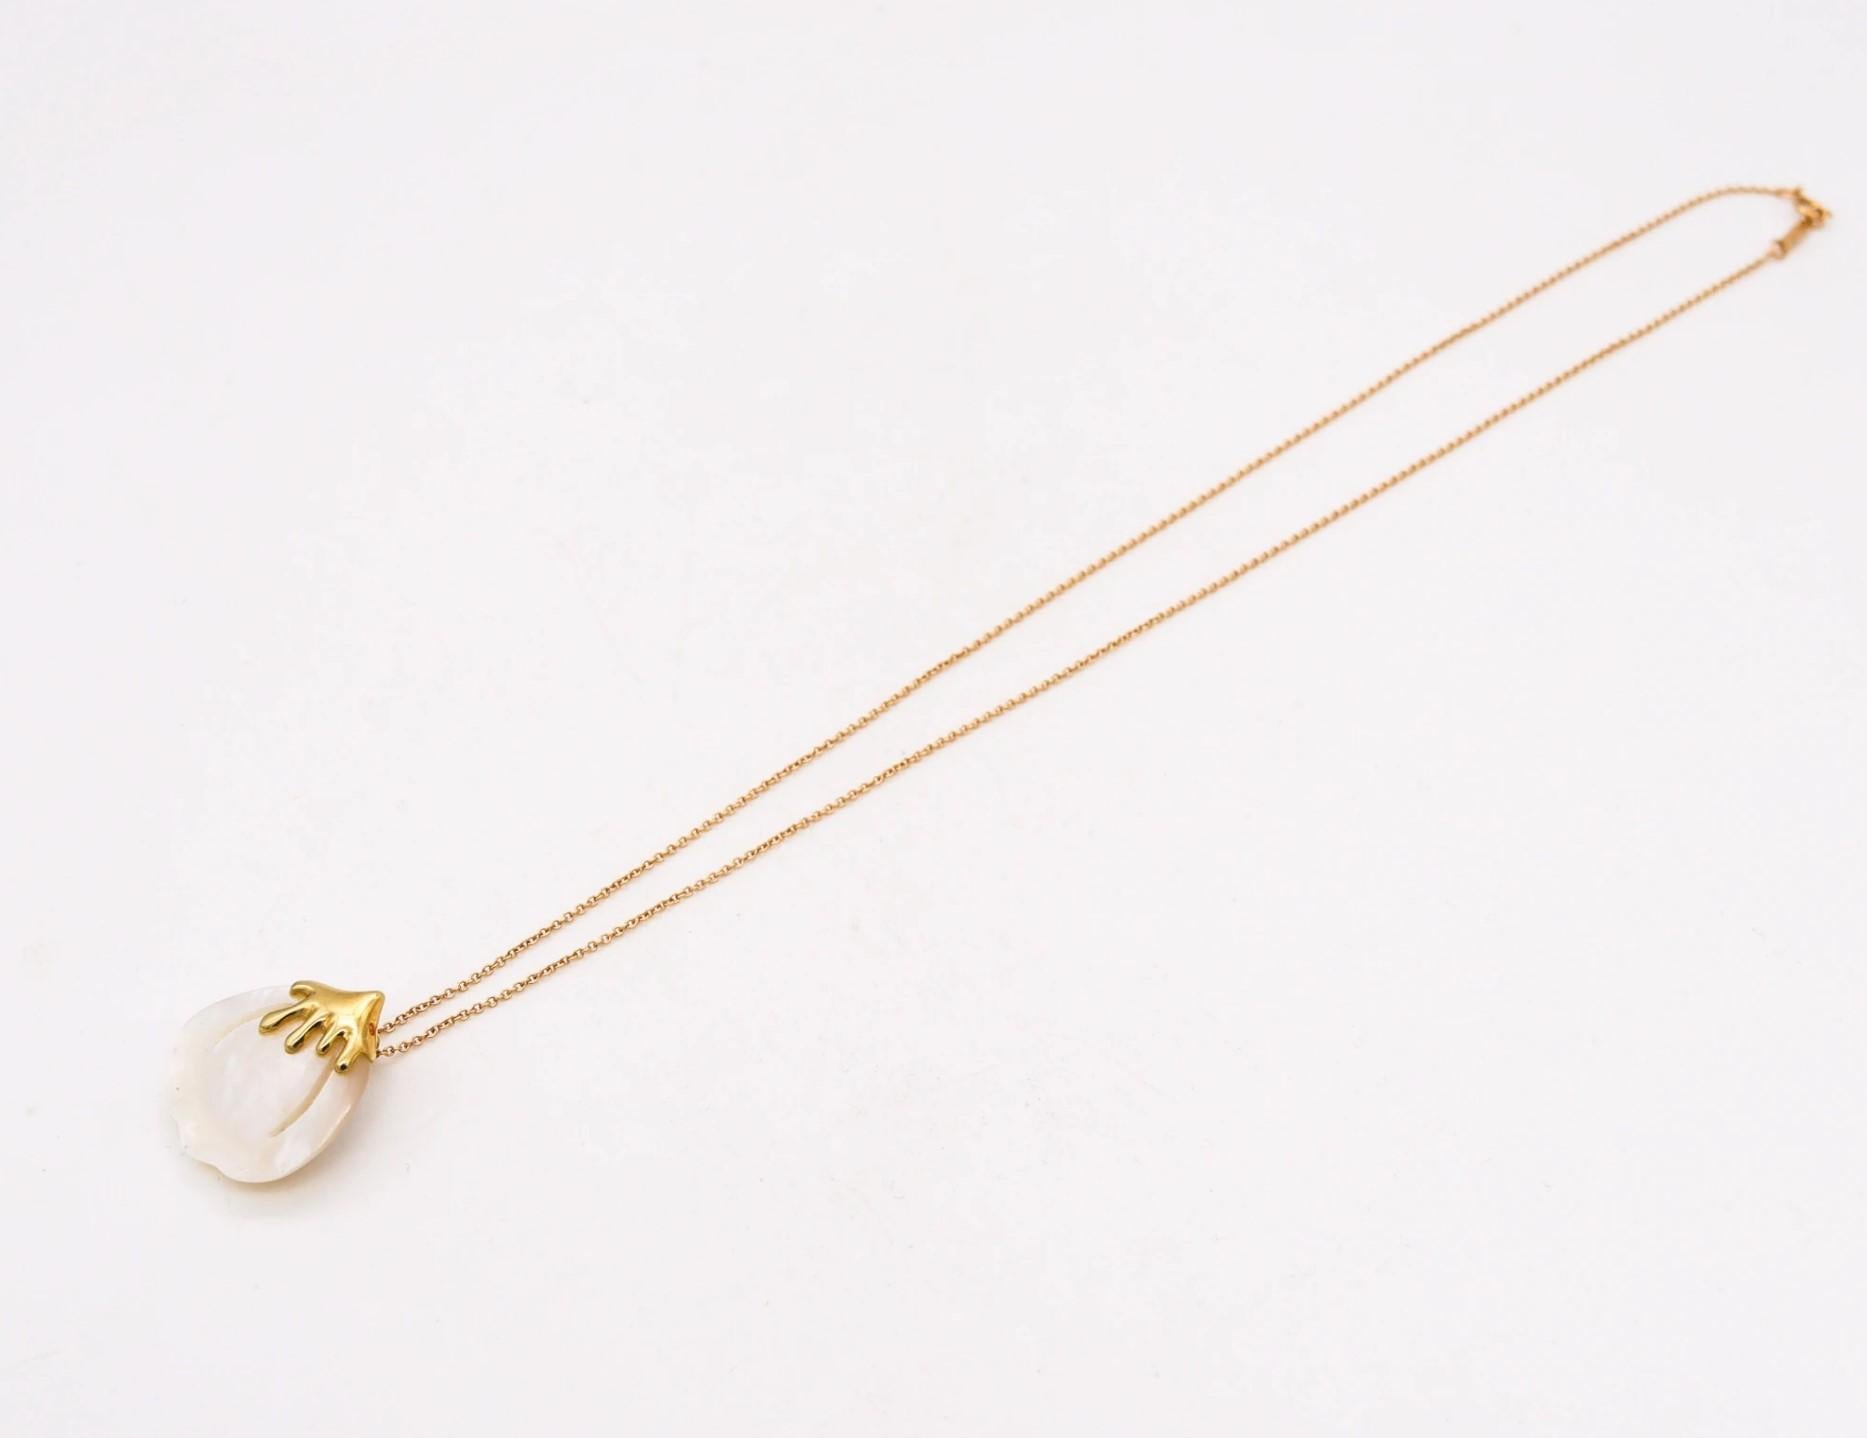 Ein Blütenblatt-Halsband, entworfen von Angela Cummings für Tiffany & Co.

Wunderschönes und jugendliches Ptal-Halsband, das Cummings 1976 für Tiffany & Co. entworfen hat. Dieses Stück aus der Kollektion von 1976-1977 ist aus 18 Karat Gelbgold